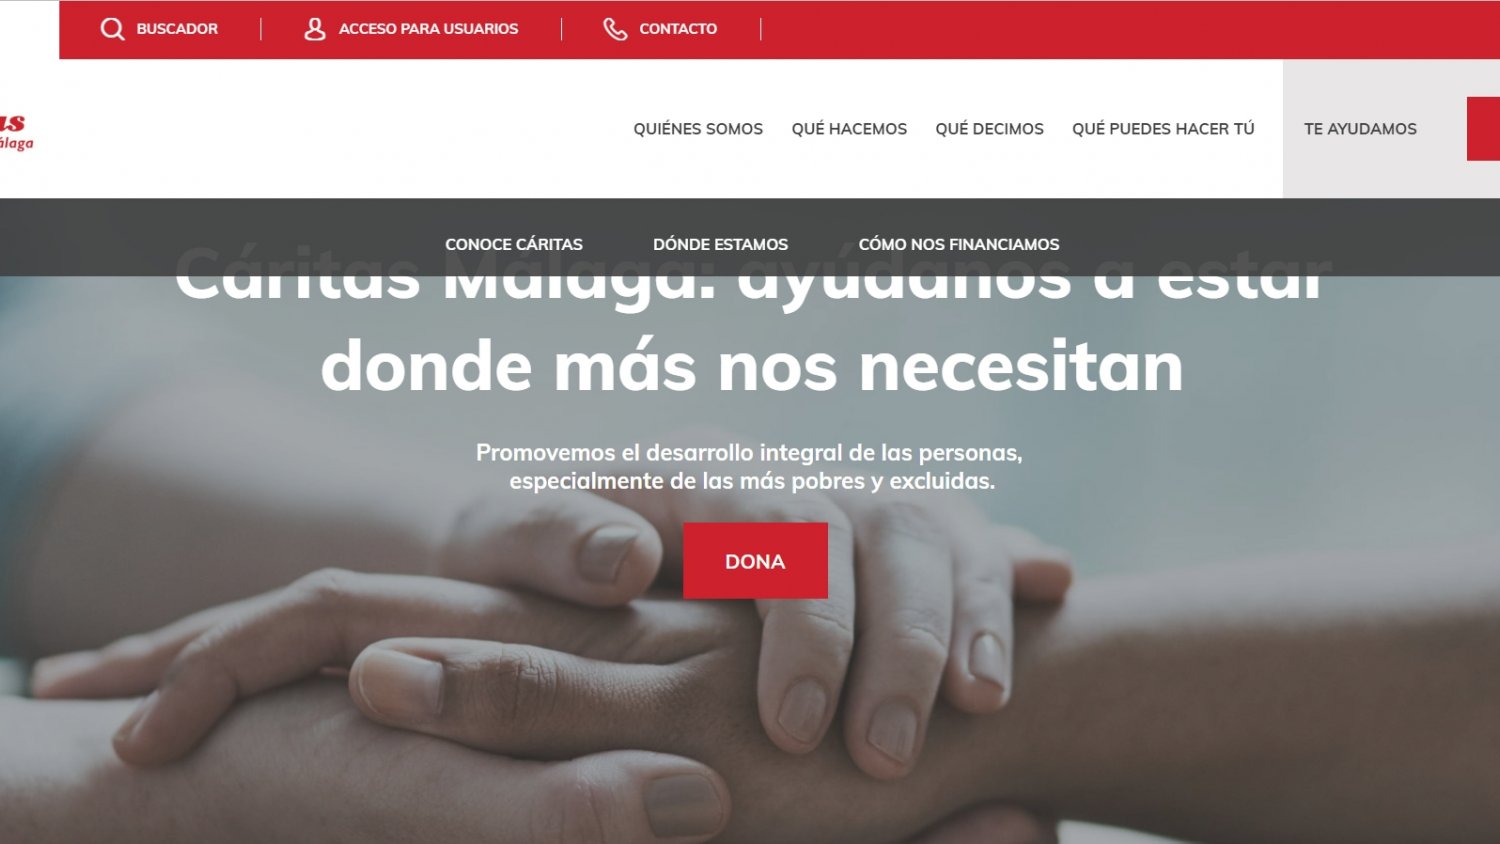 Cáritas Diocesana de Málaga presenta un nuevo diseño en su página web